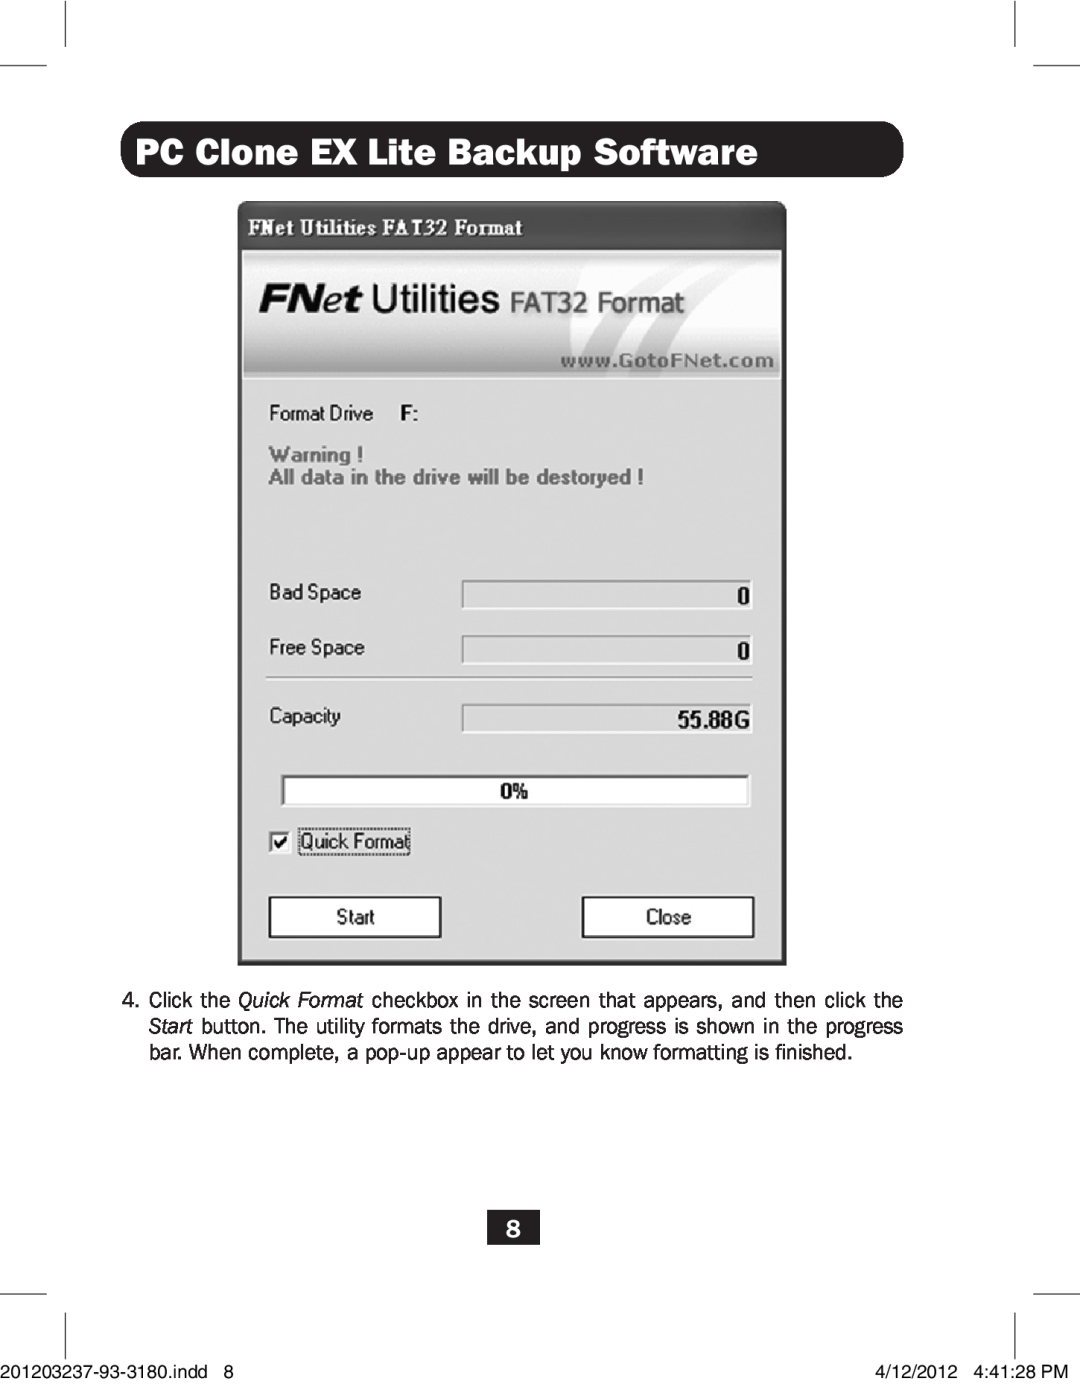 Tripp Lite U238-000-1 owner manual PC Clone EX Lite Backup Software, indd, 4/12/2012 44128 PM 